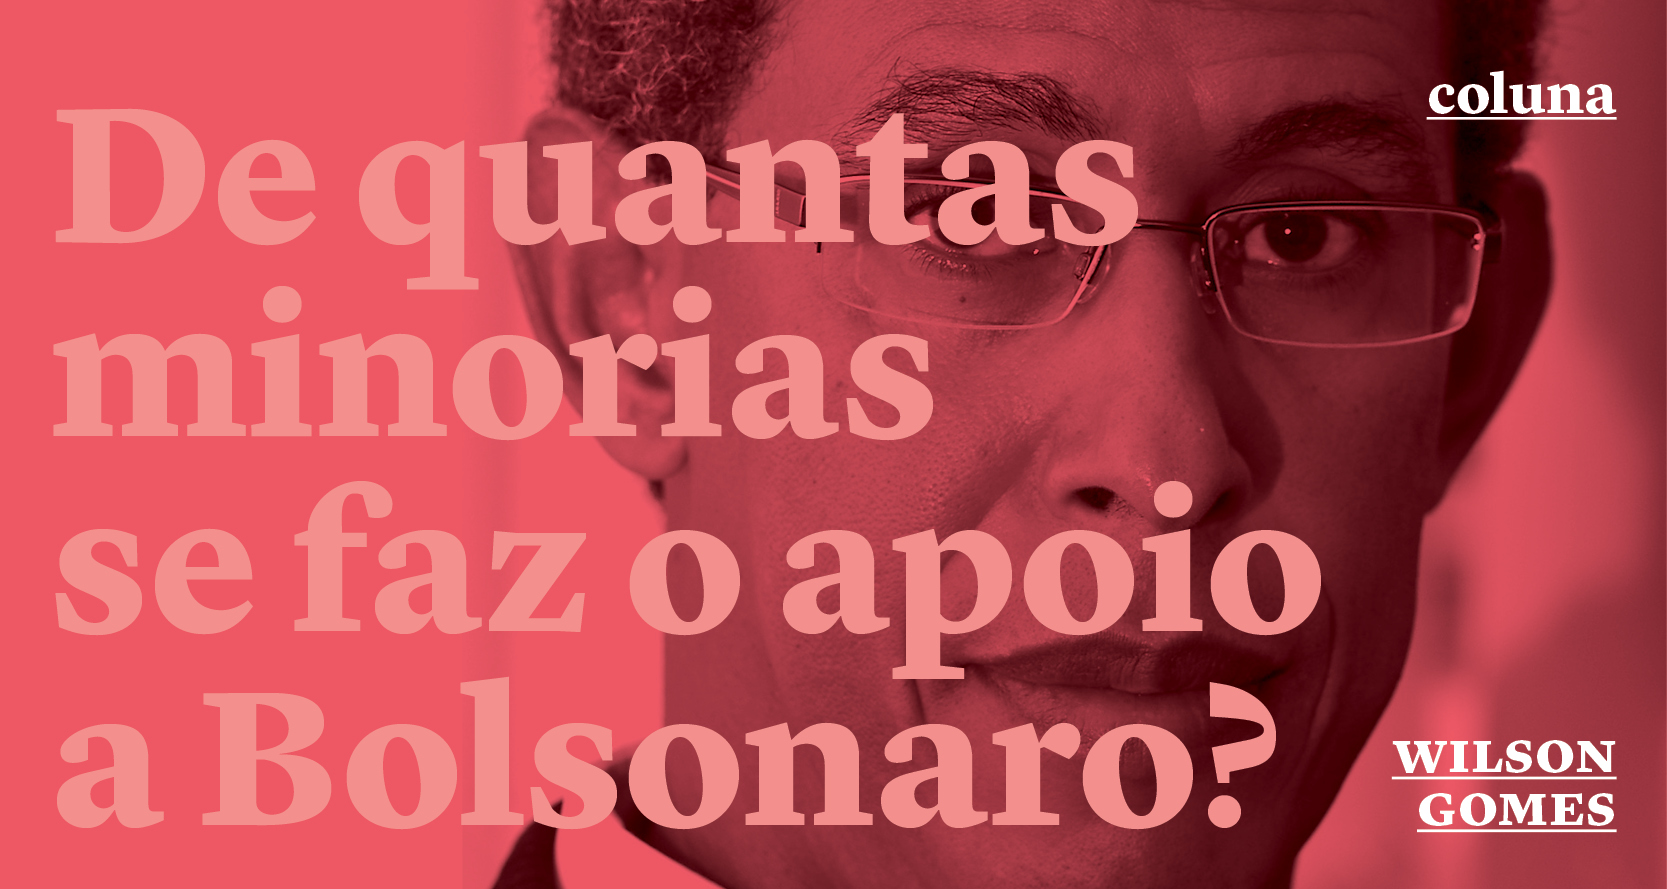 De quantas minorias se faz o apoio a Bolsonaro?